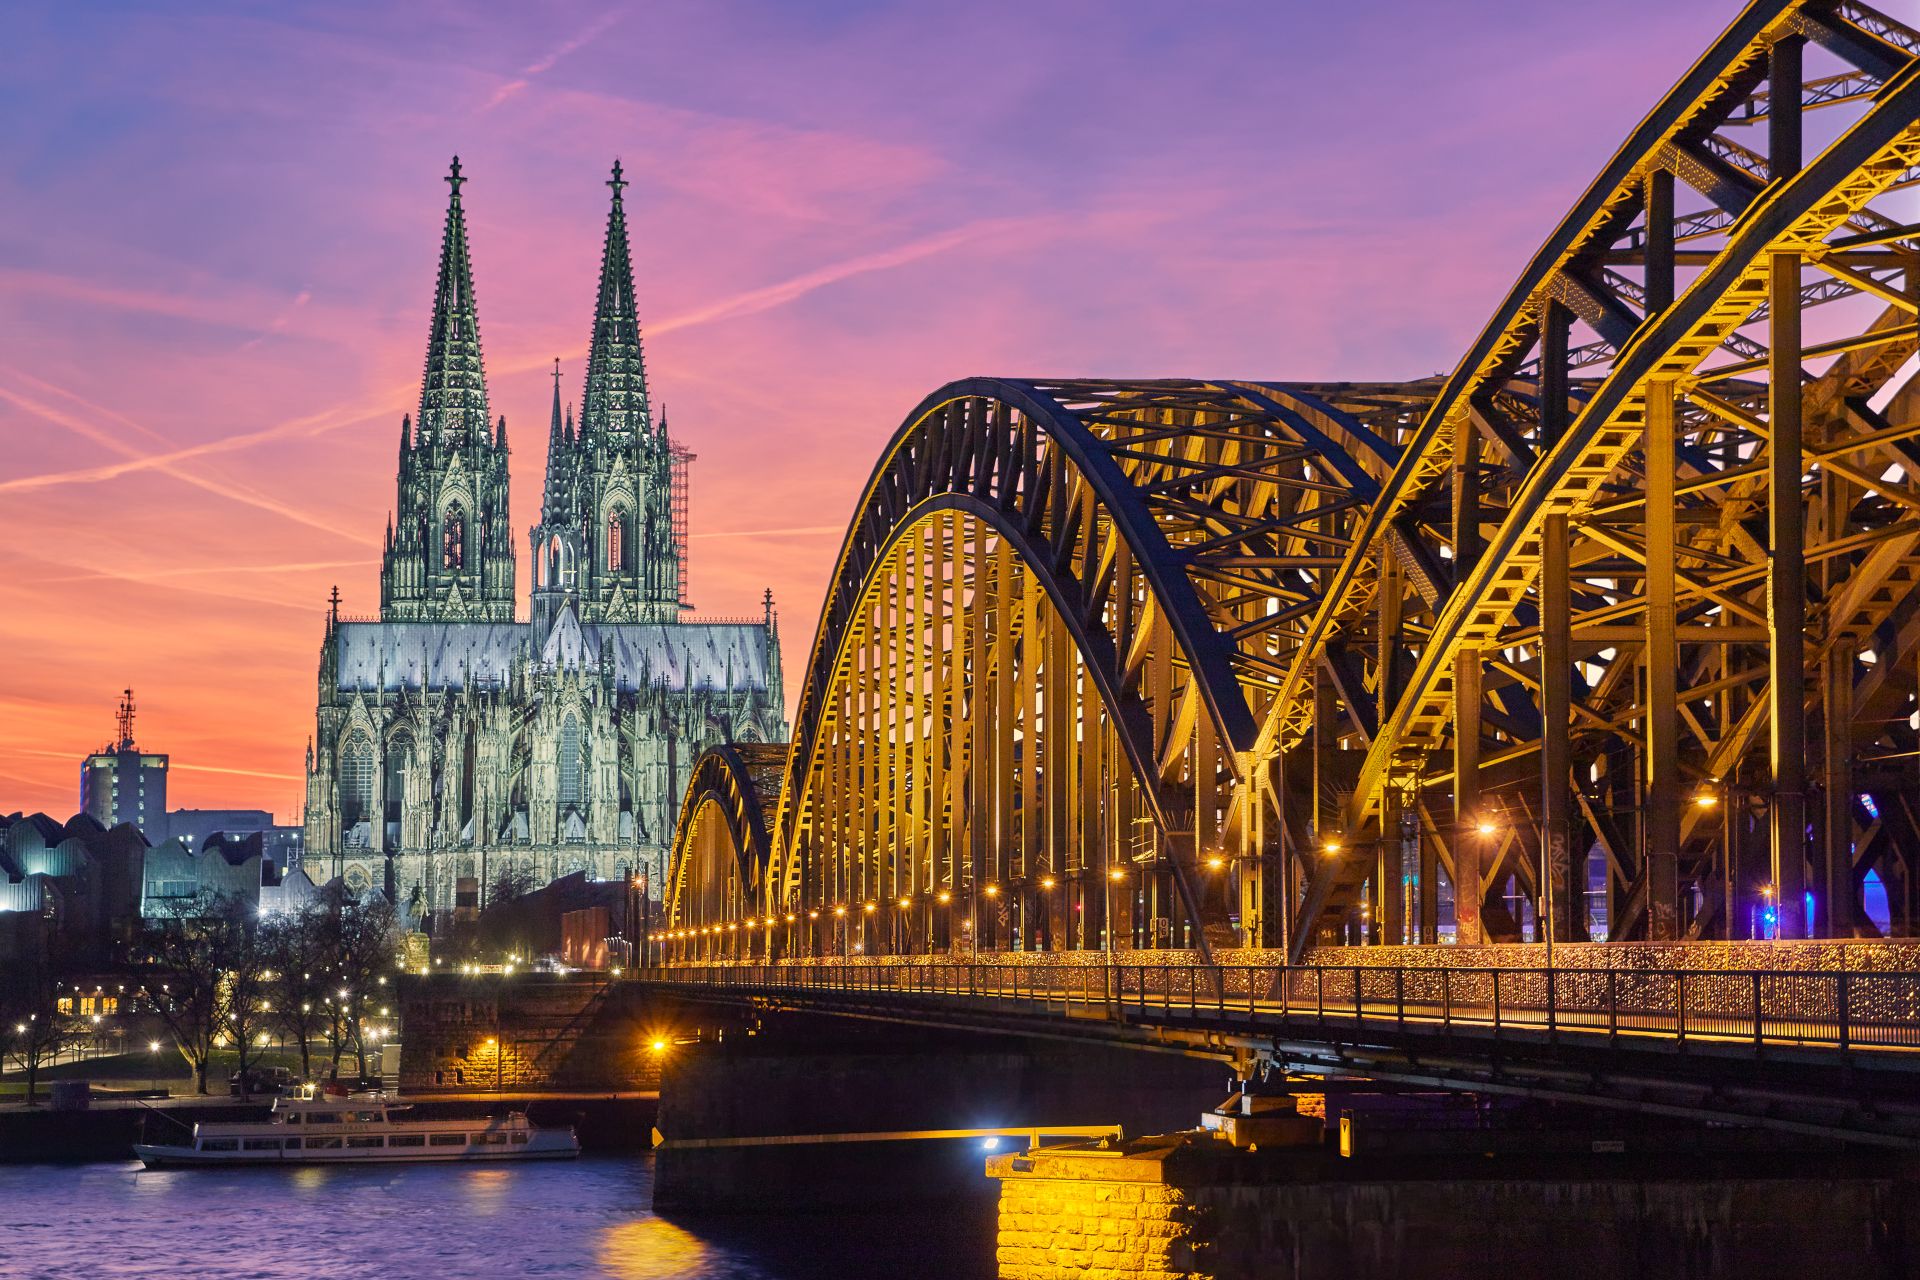 La catedral de Colonia y el puente Hohenzollern al atardecer